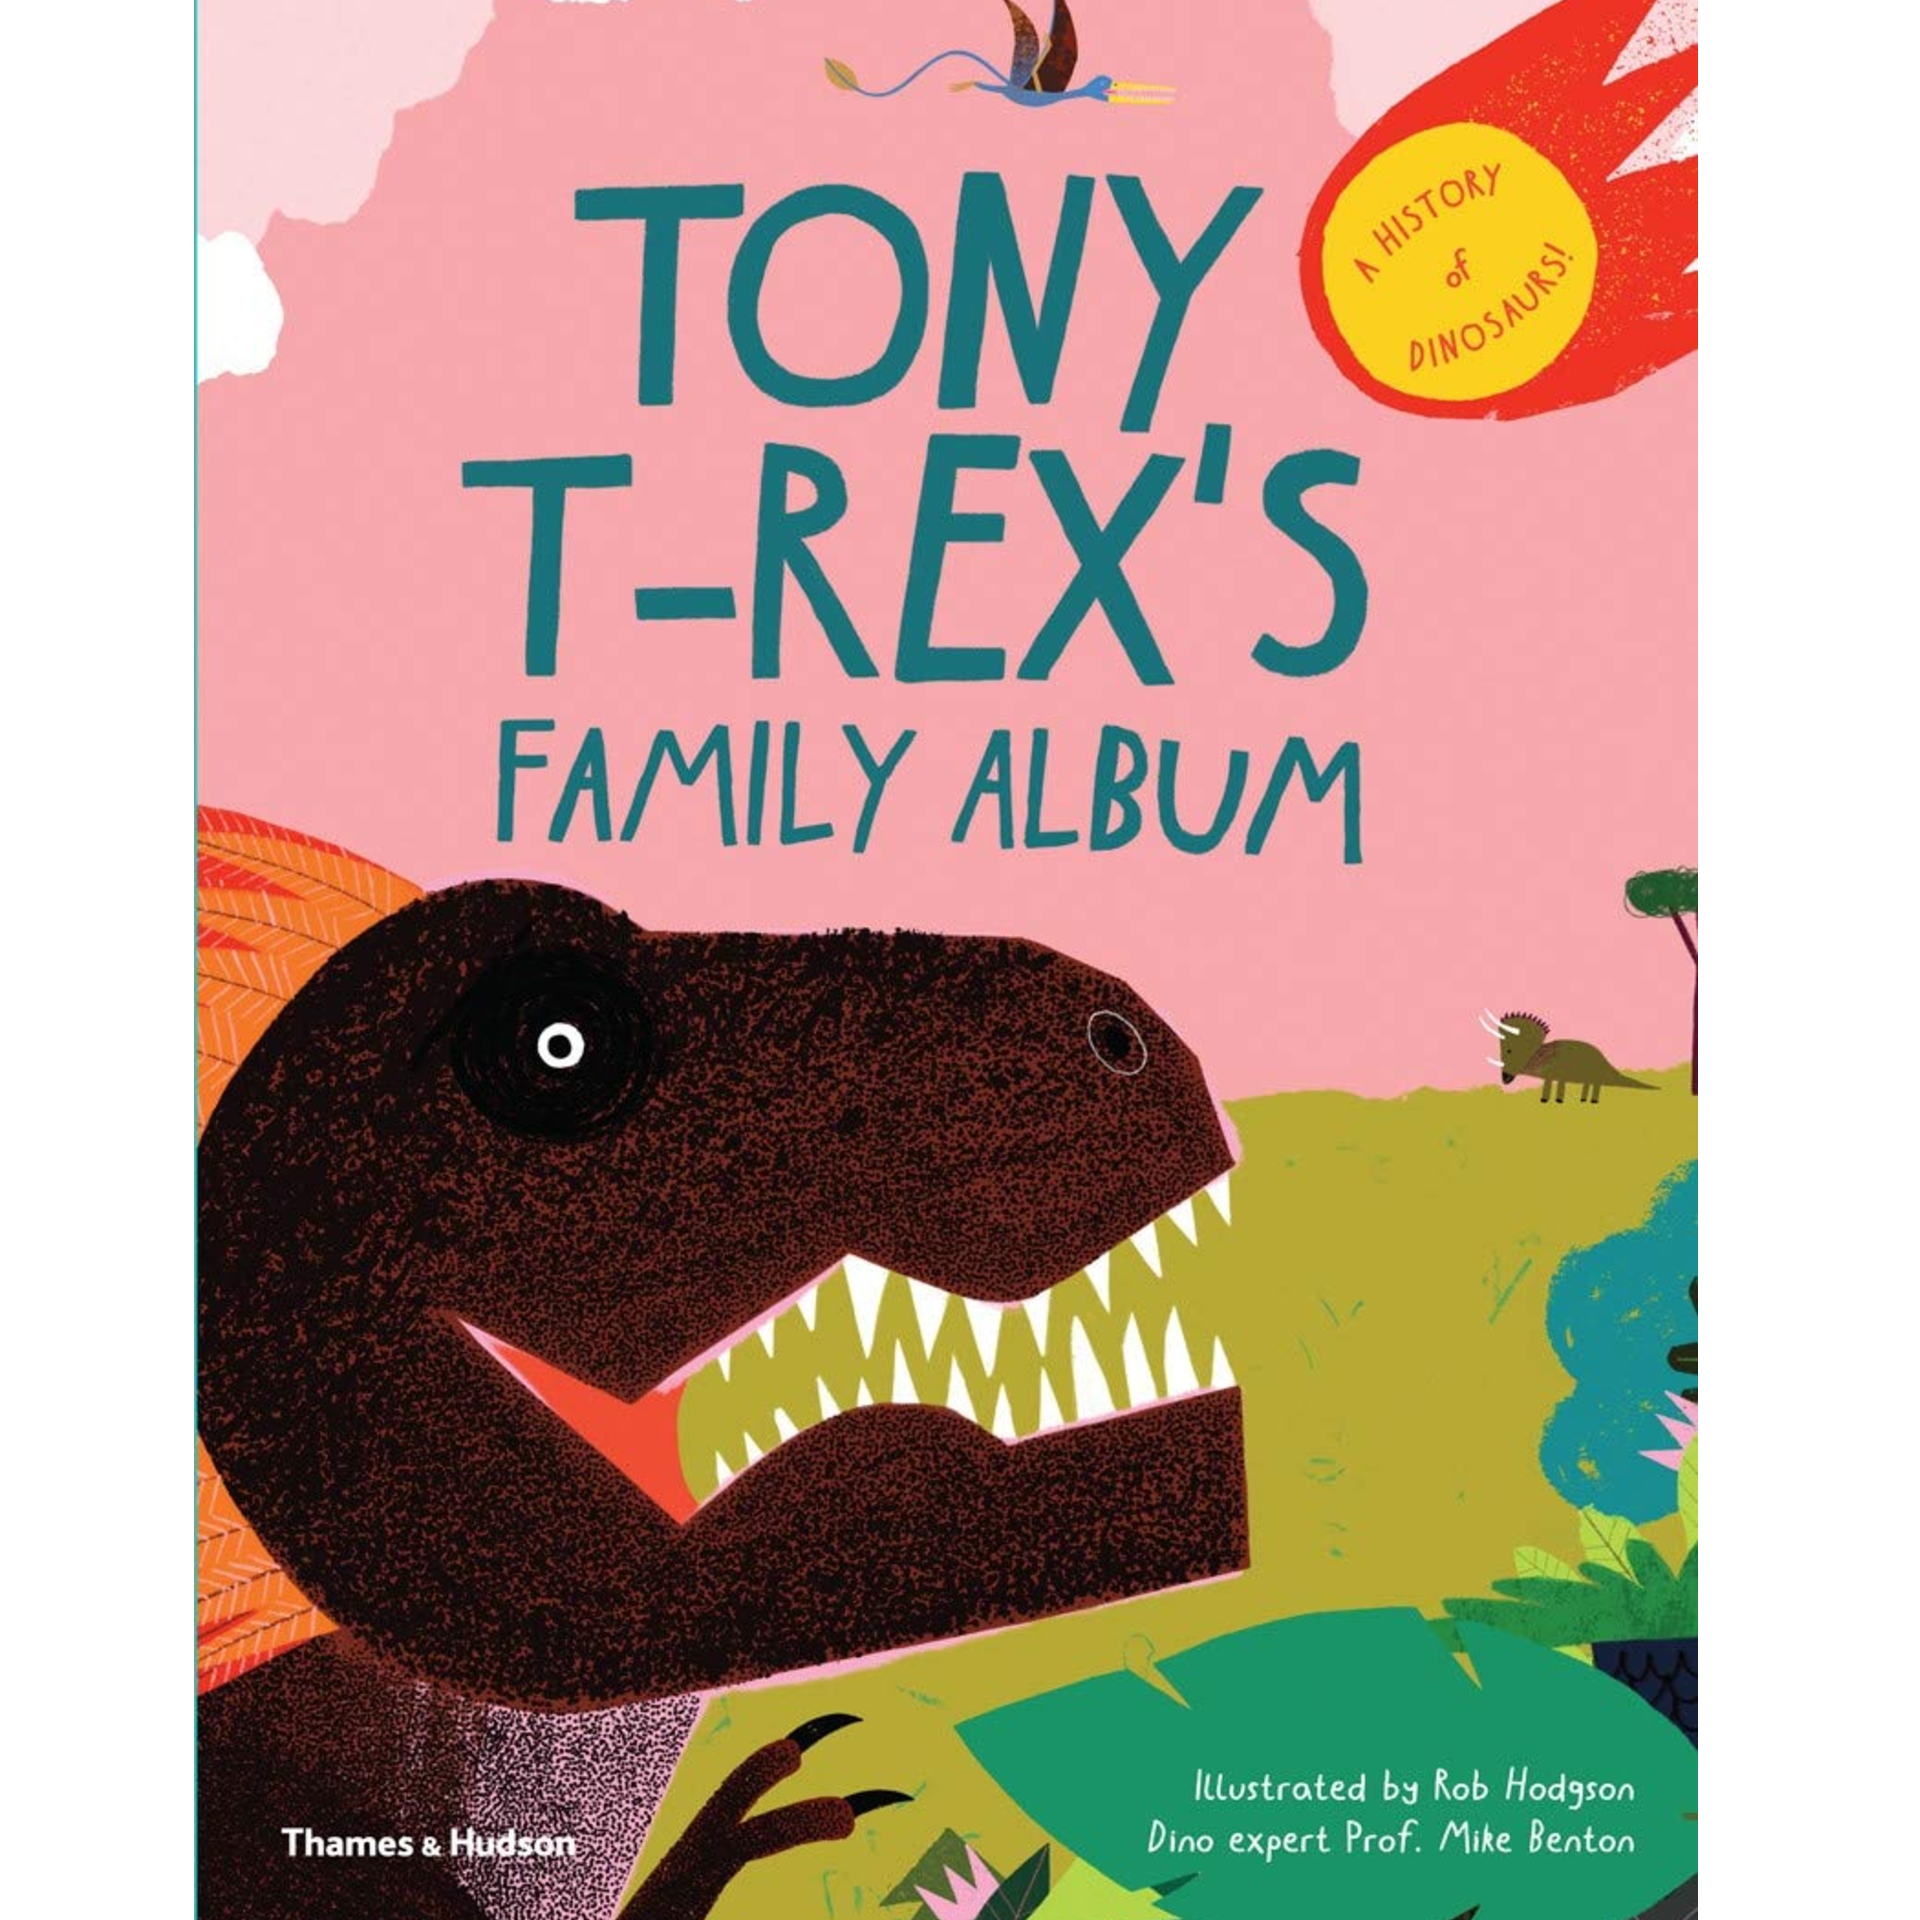 Tony T-Rex's Family Album